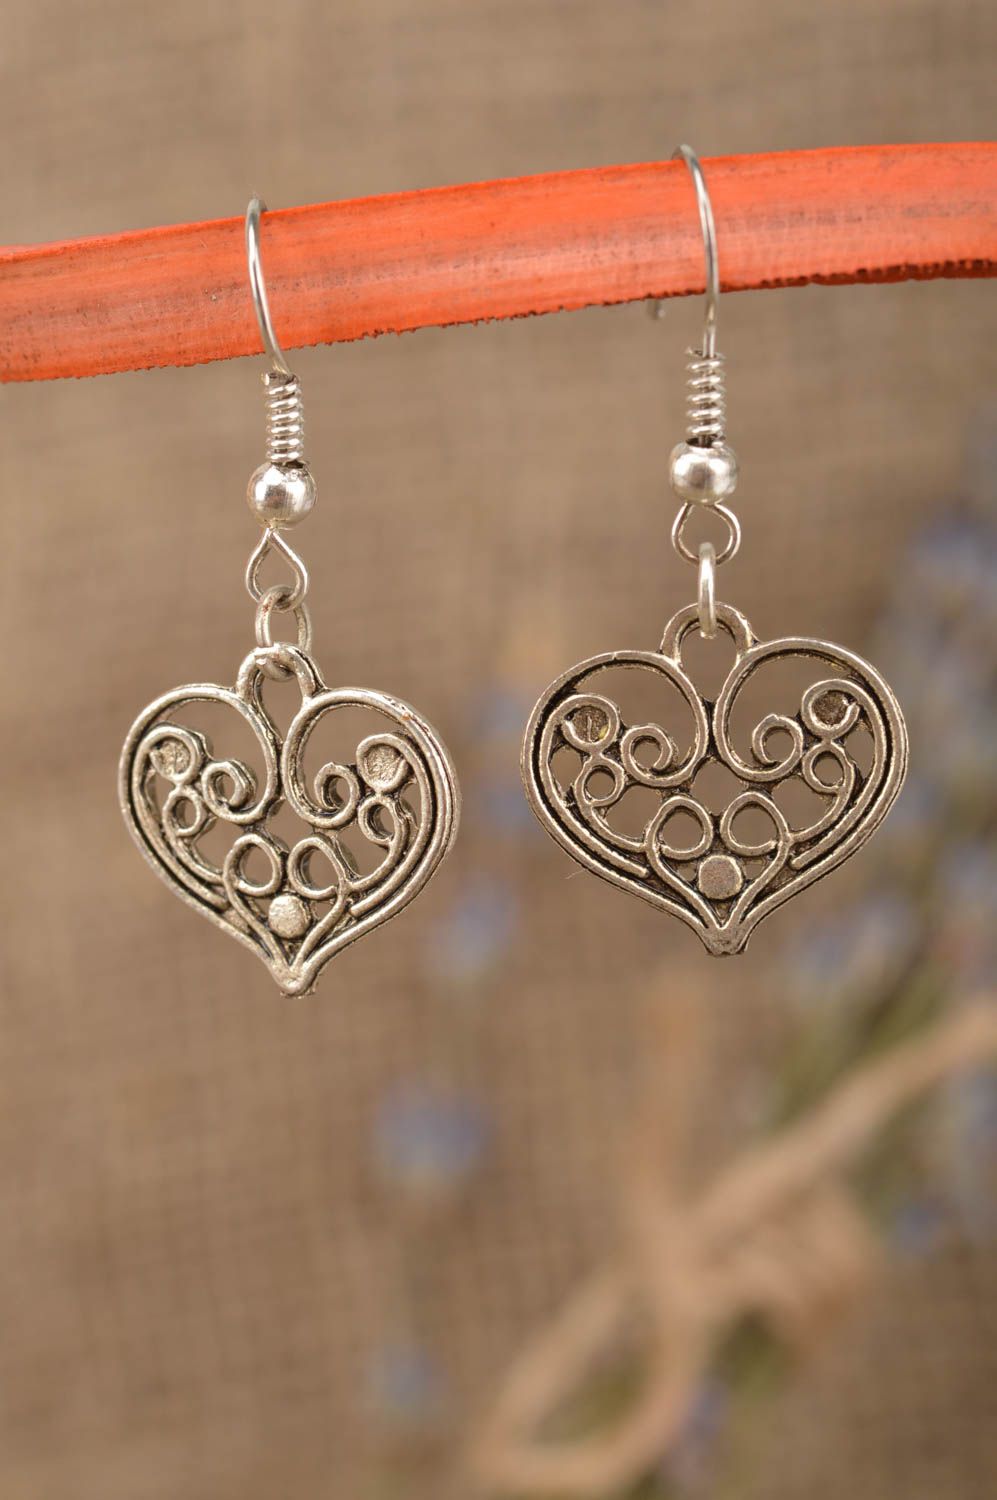 Unusual handmade metal earrings fashion earrings designs jewelry for women photo 1